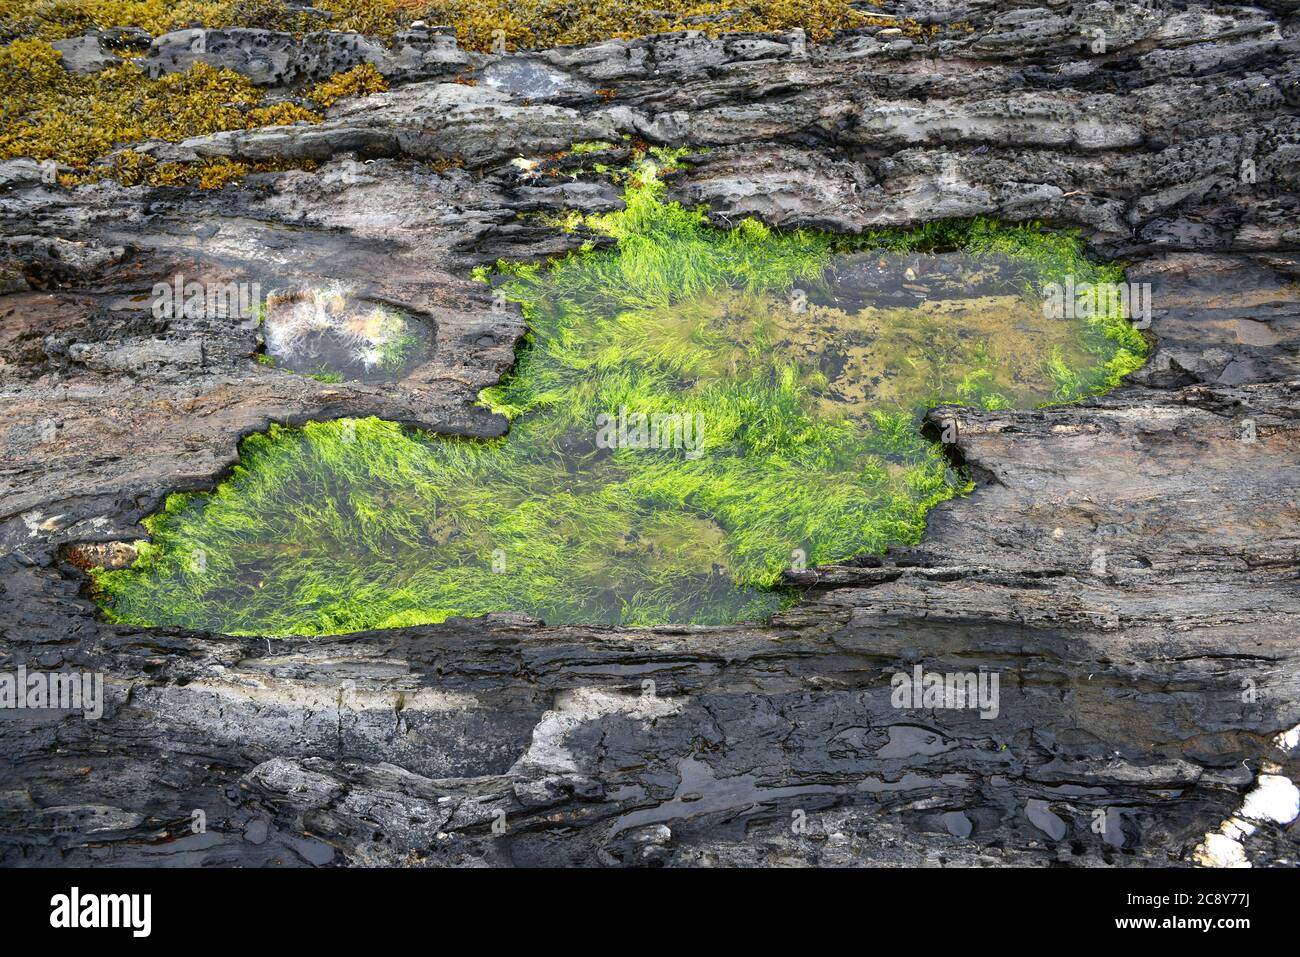 Isola di Barnes. Harpswell Neck, Maine. Casco Bay. Piscina con marea. Le alghe verdi sono Enteromorfa. Foto Stock